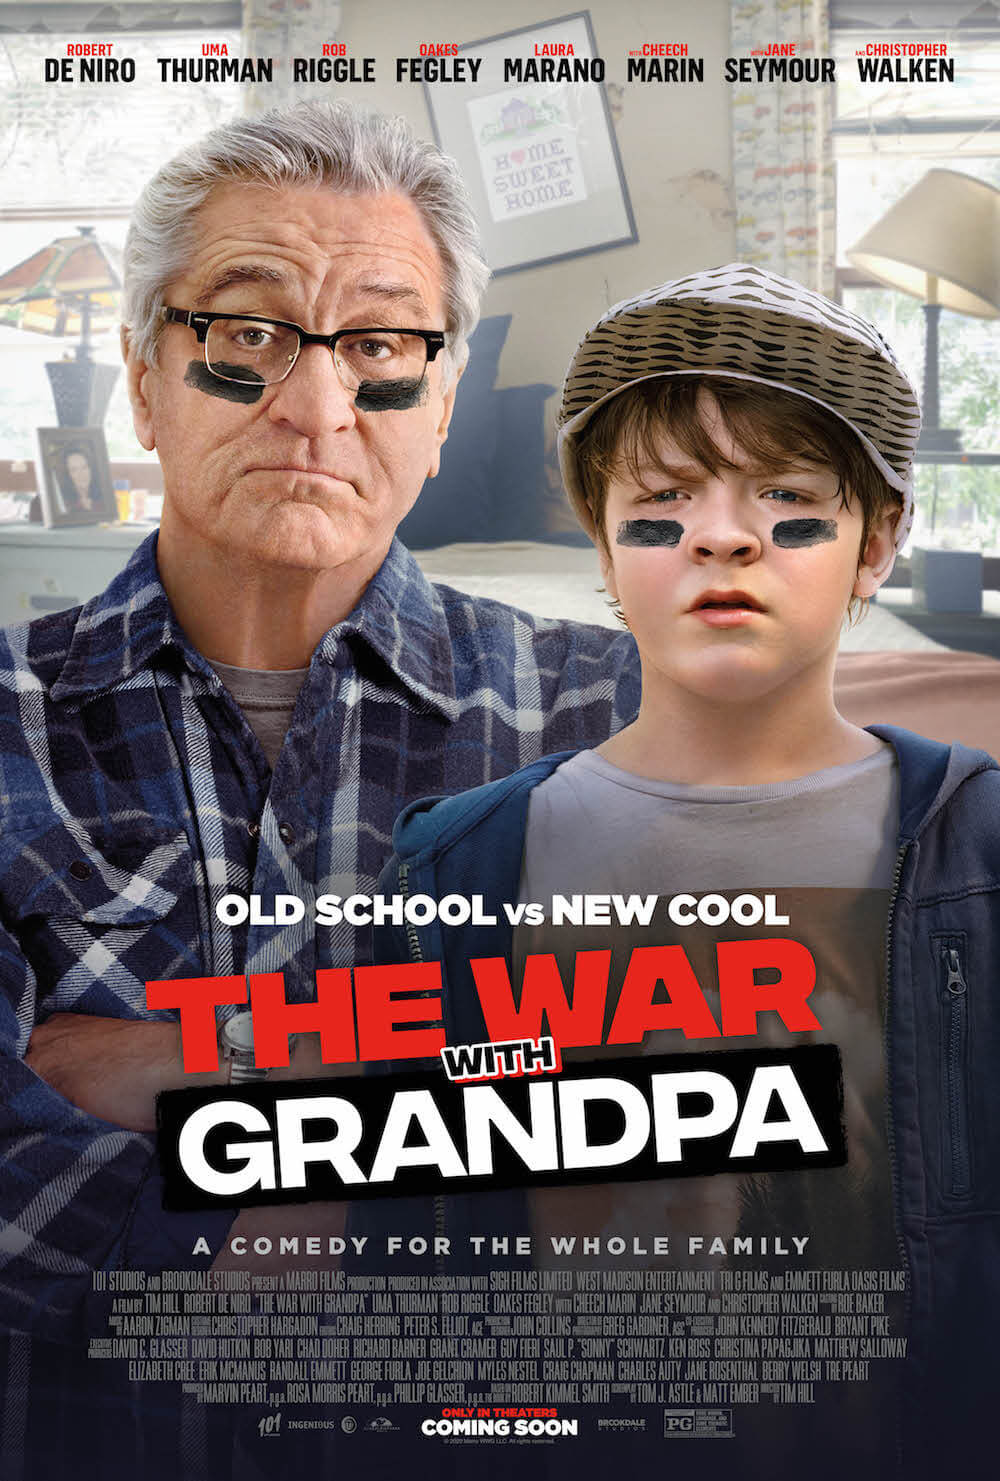 The War With Grandpa | Comédia com Robert De Niro ganha trailer